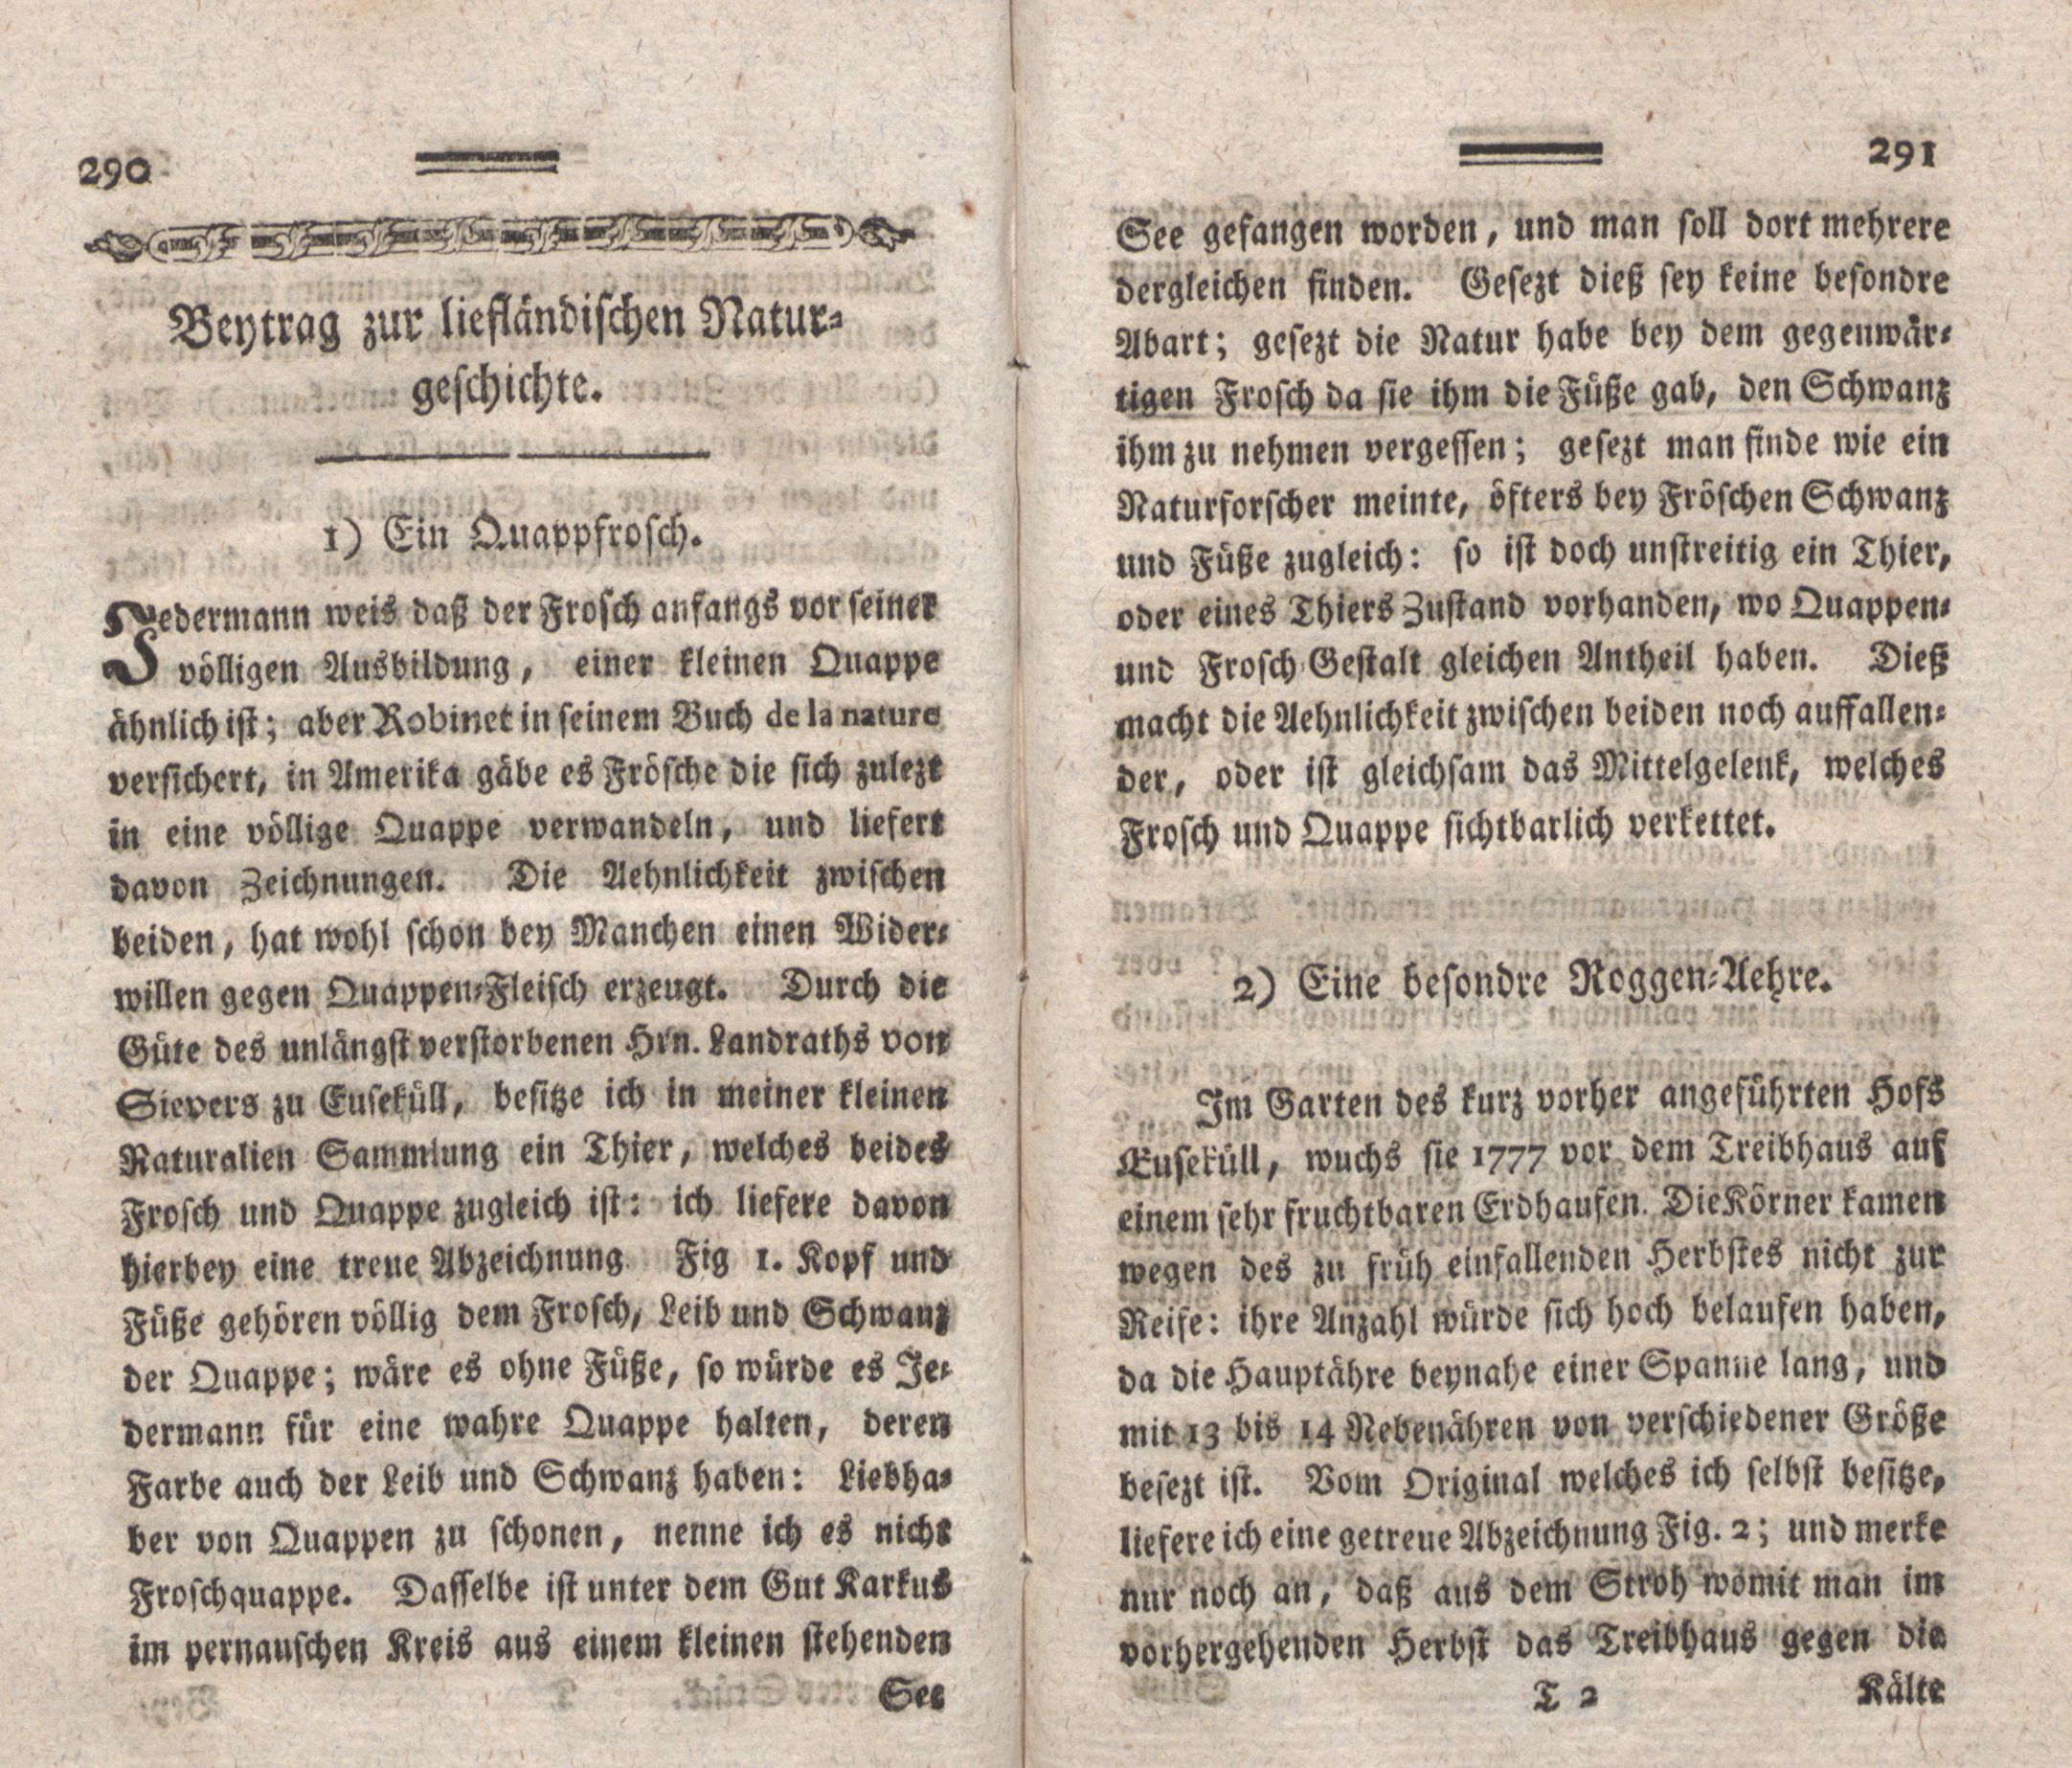 Nordische Miscellaneen [04] (1782) | 147. (290-291) Main body of text